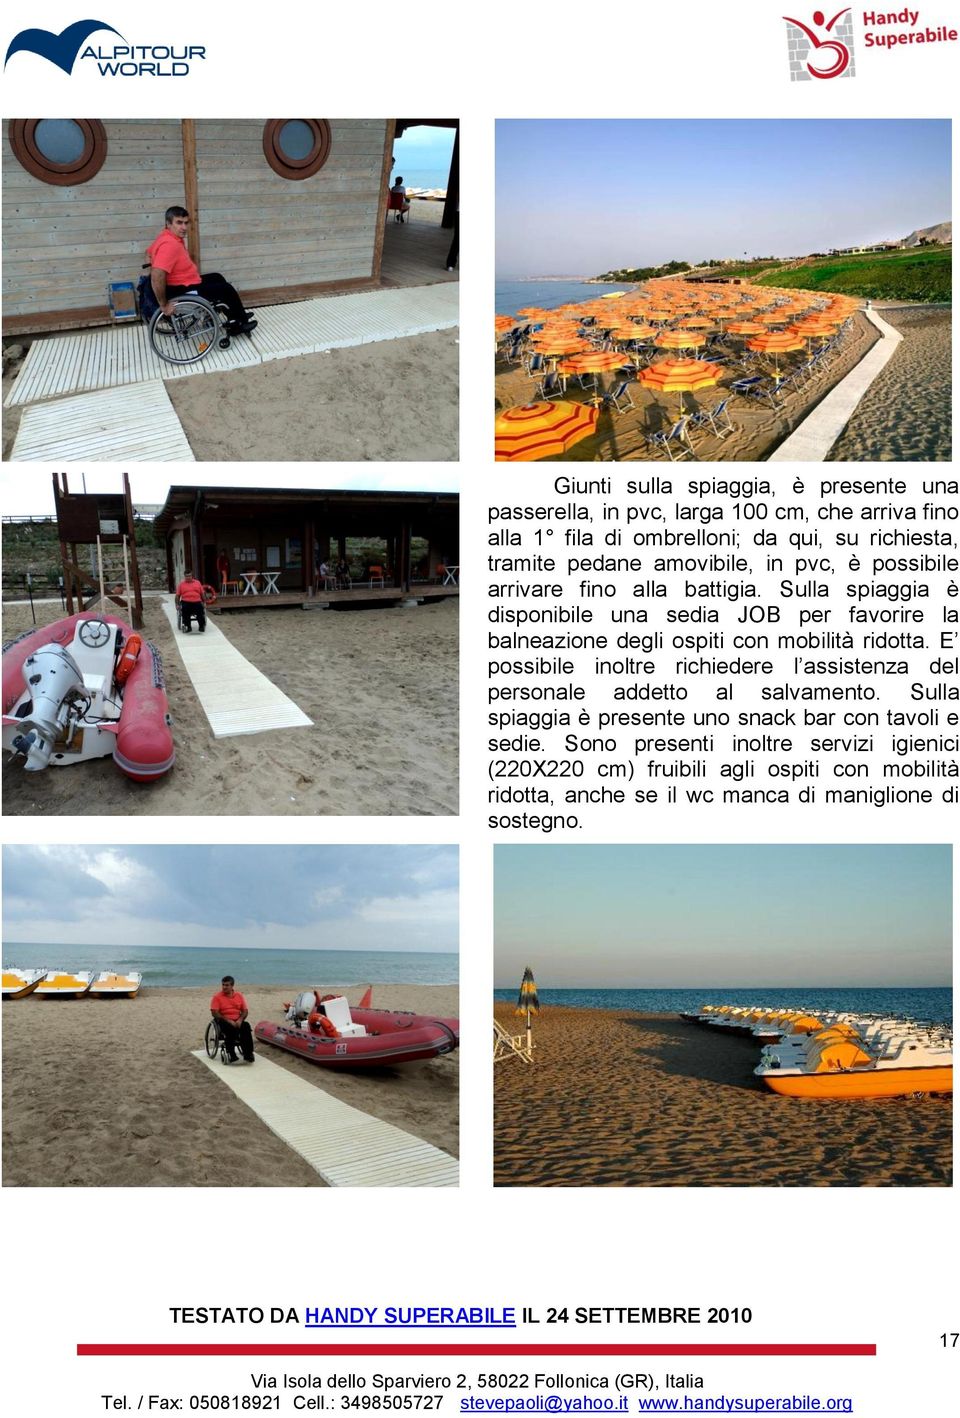 Sulla spiaggia è disponibile una sedia JOB per favorire la balneazione degli ospiti con mobilità ridotta.